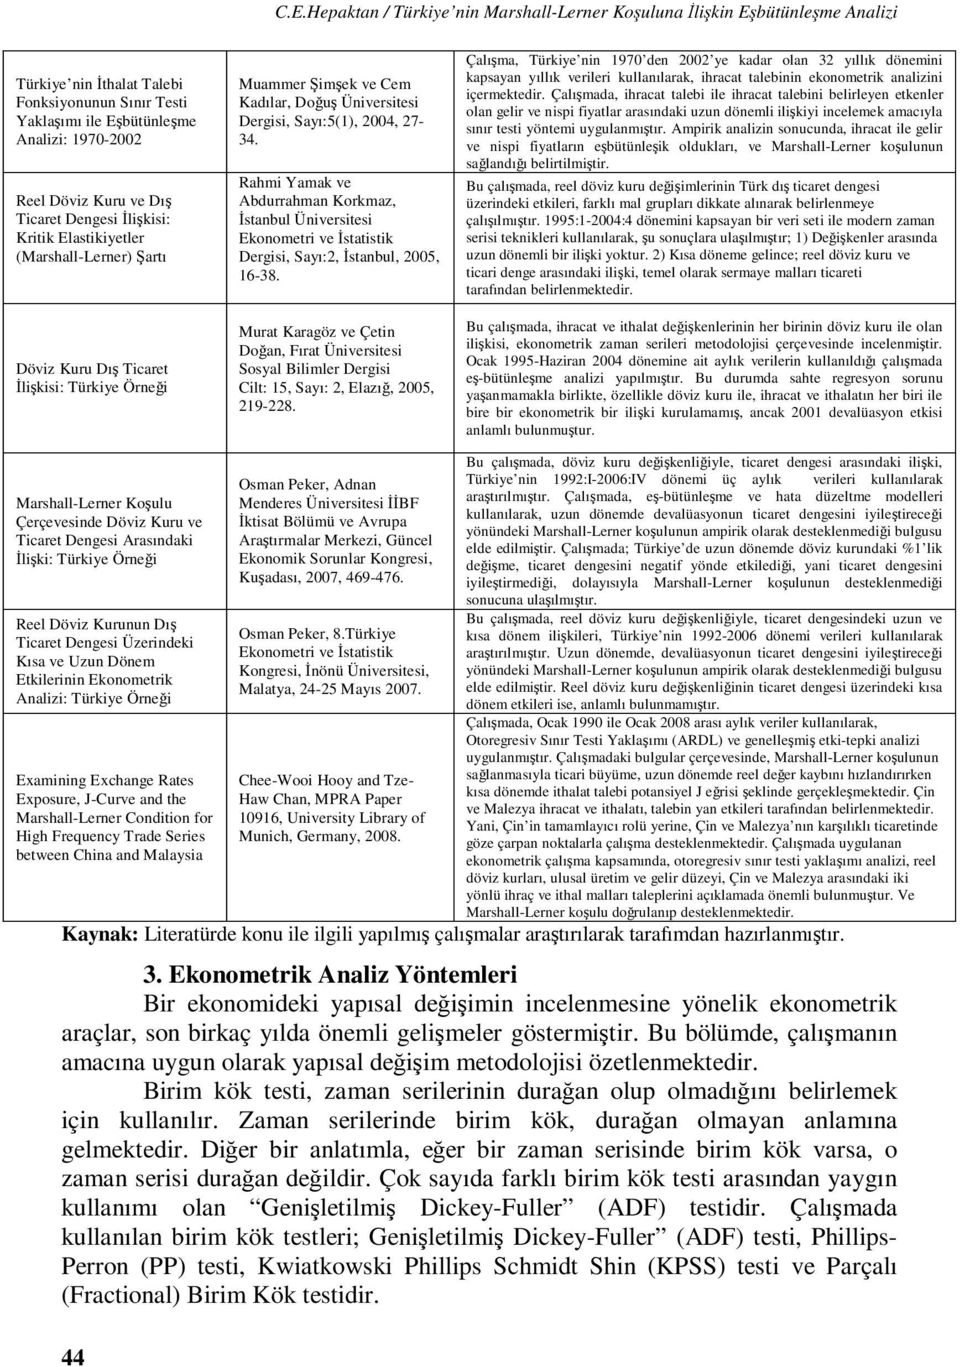 Rahmi Yamak ve Abdurrahman Korkmaz, İsanbul Üniversiesi Ekonomeri ve İsaisik Dergisi, Sayı:2, İsanbul, 2005, 16-38.